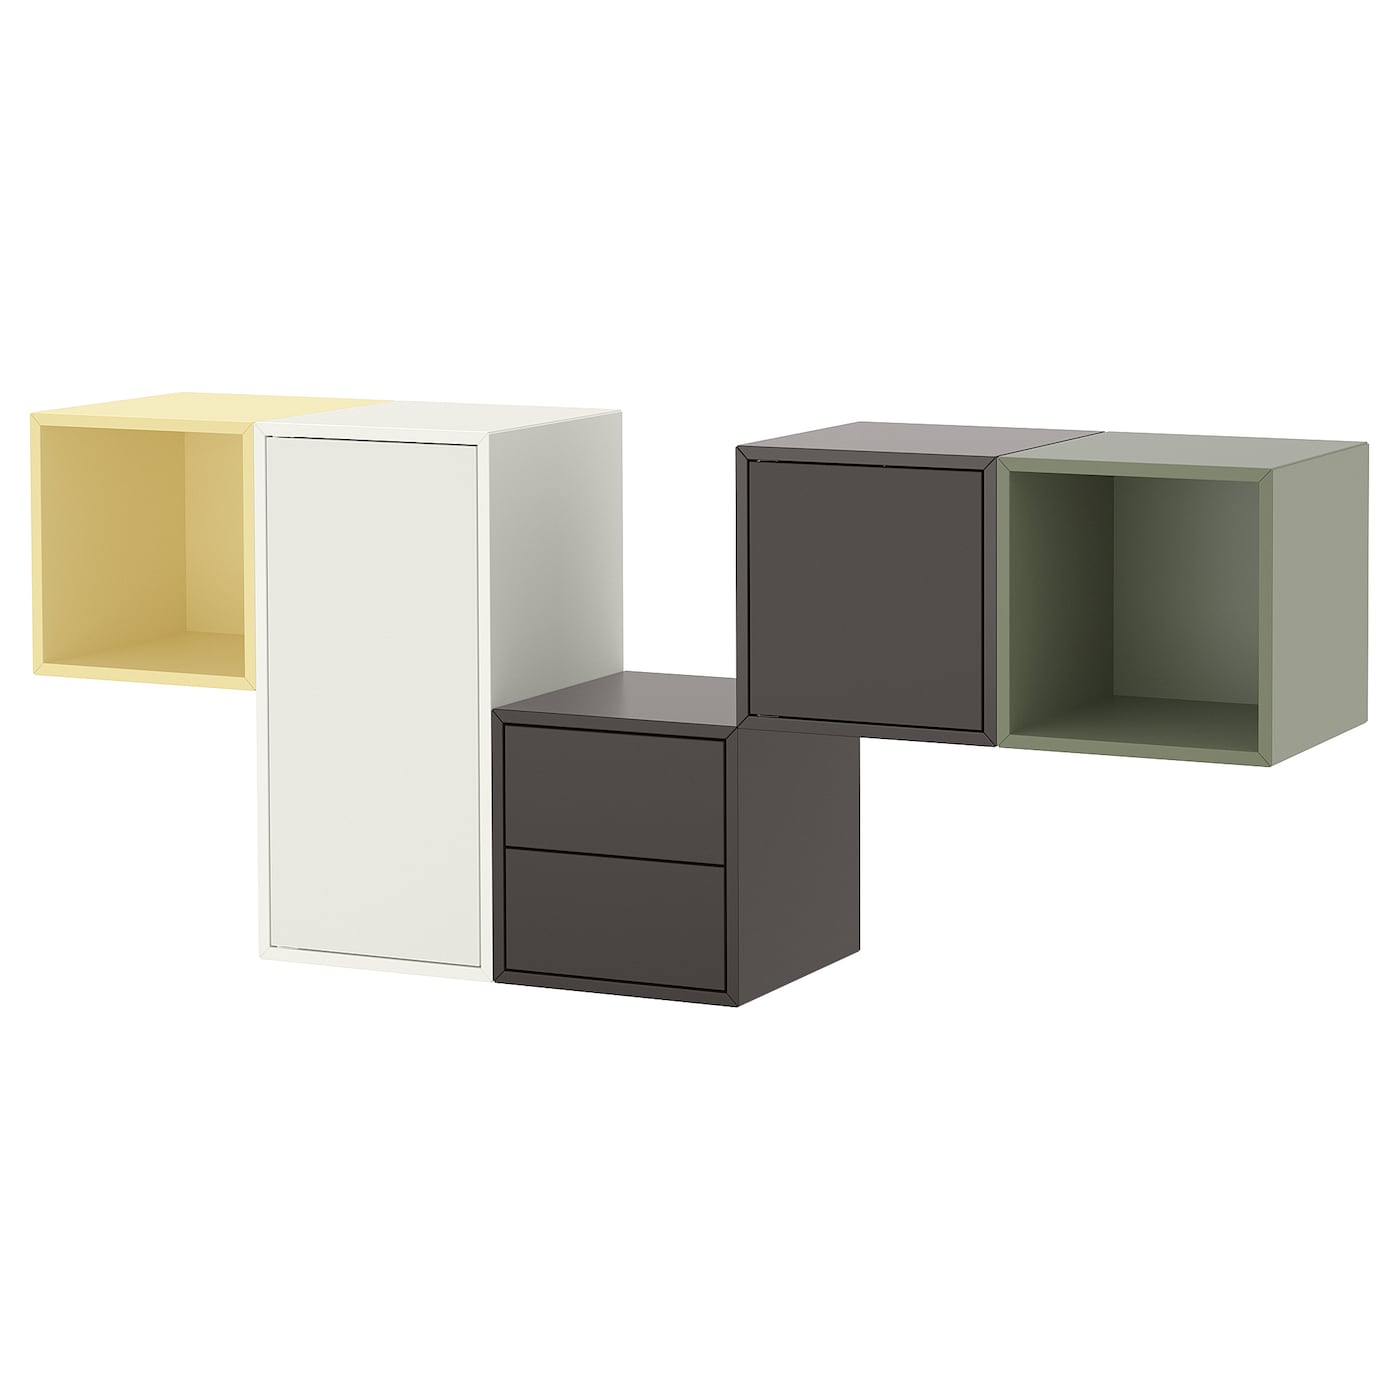 Комбинация для хранения - EKET IKEA/ ЭКЕТ ИКЕА,  175х70 см, желтый/коричневый/белый/зеленый